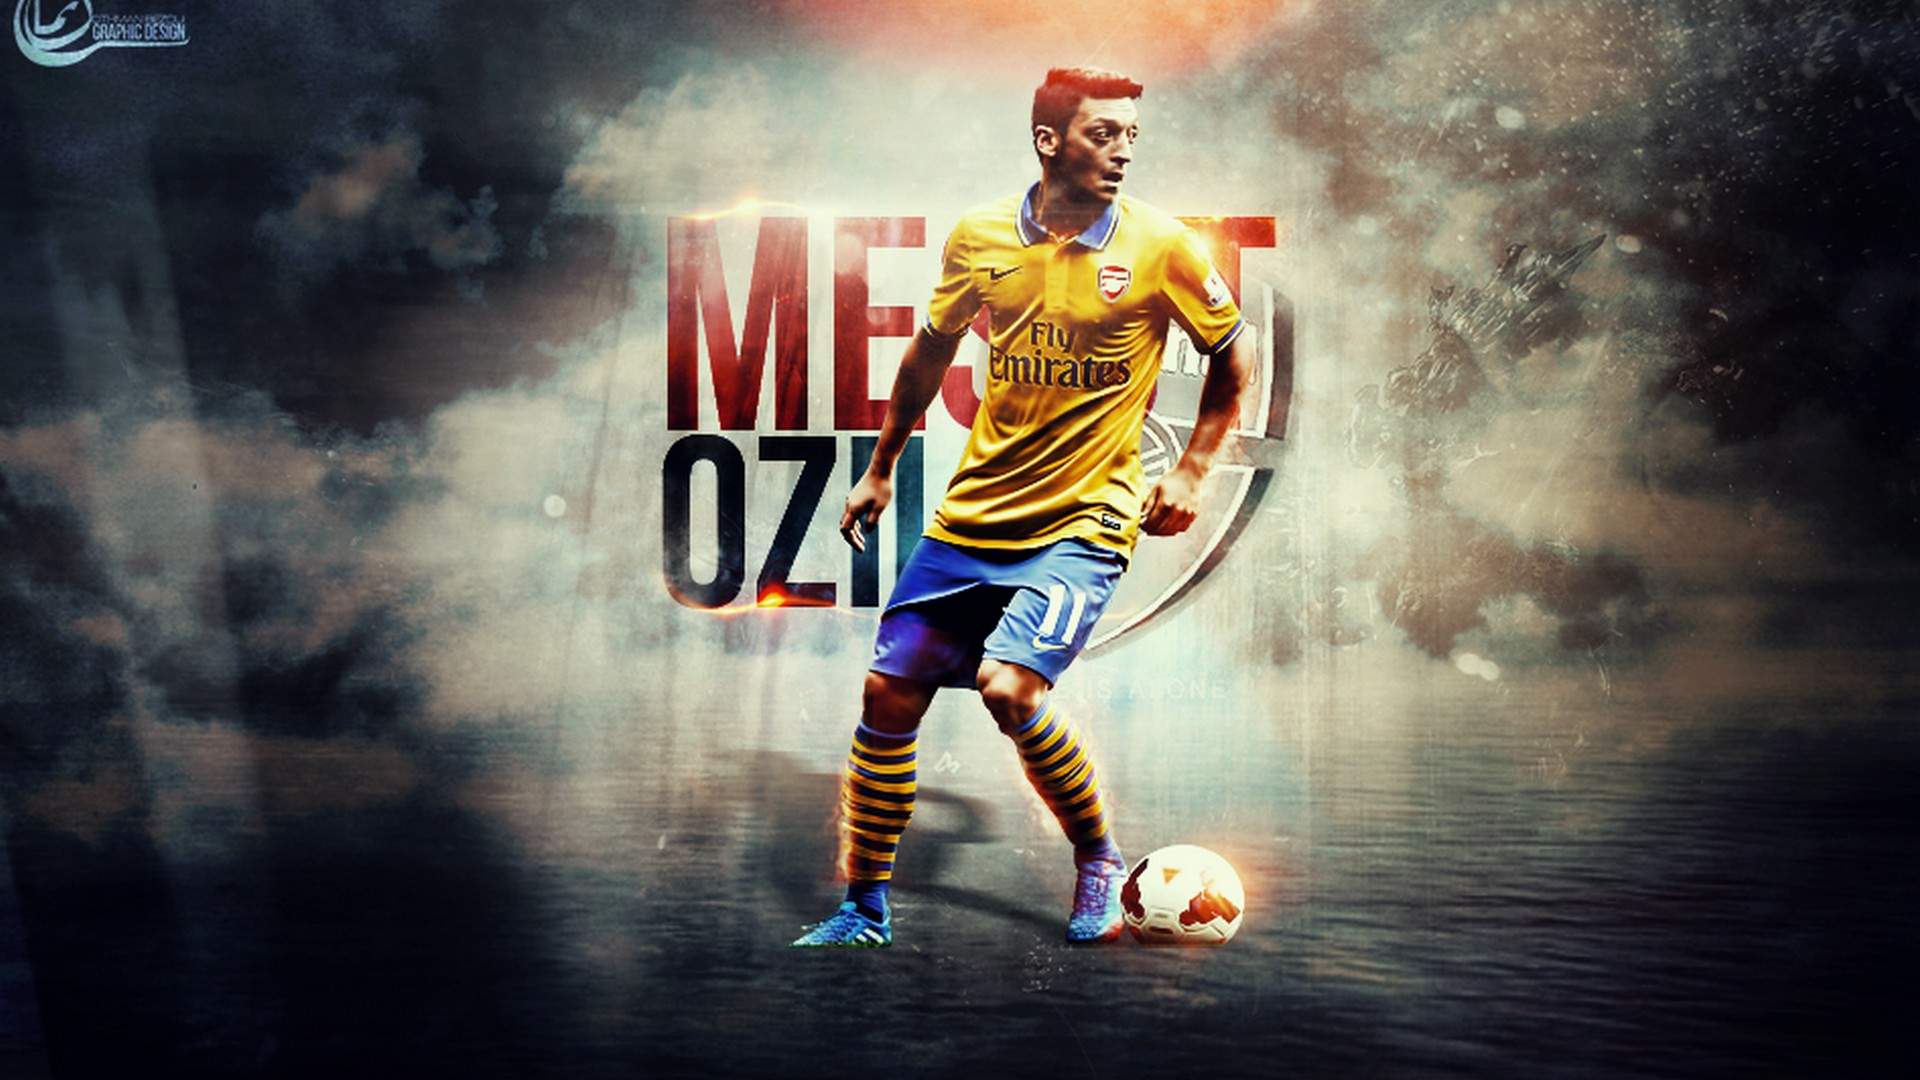 Mesut Ozil Arsenal Wallpaper 2020 Live Wallpaper Hd